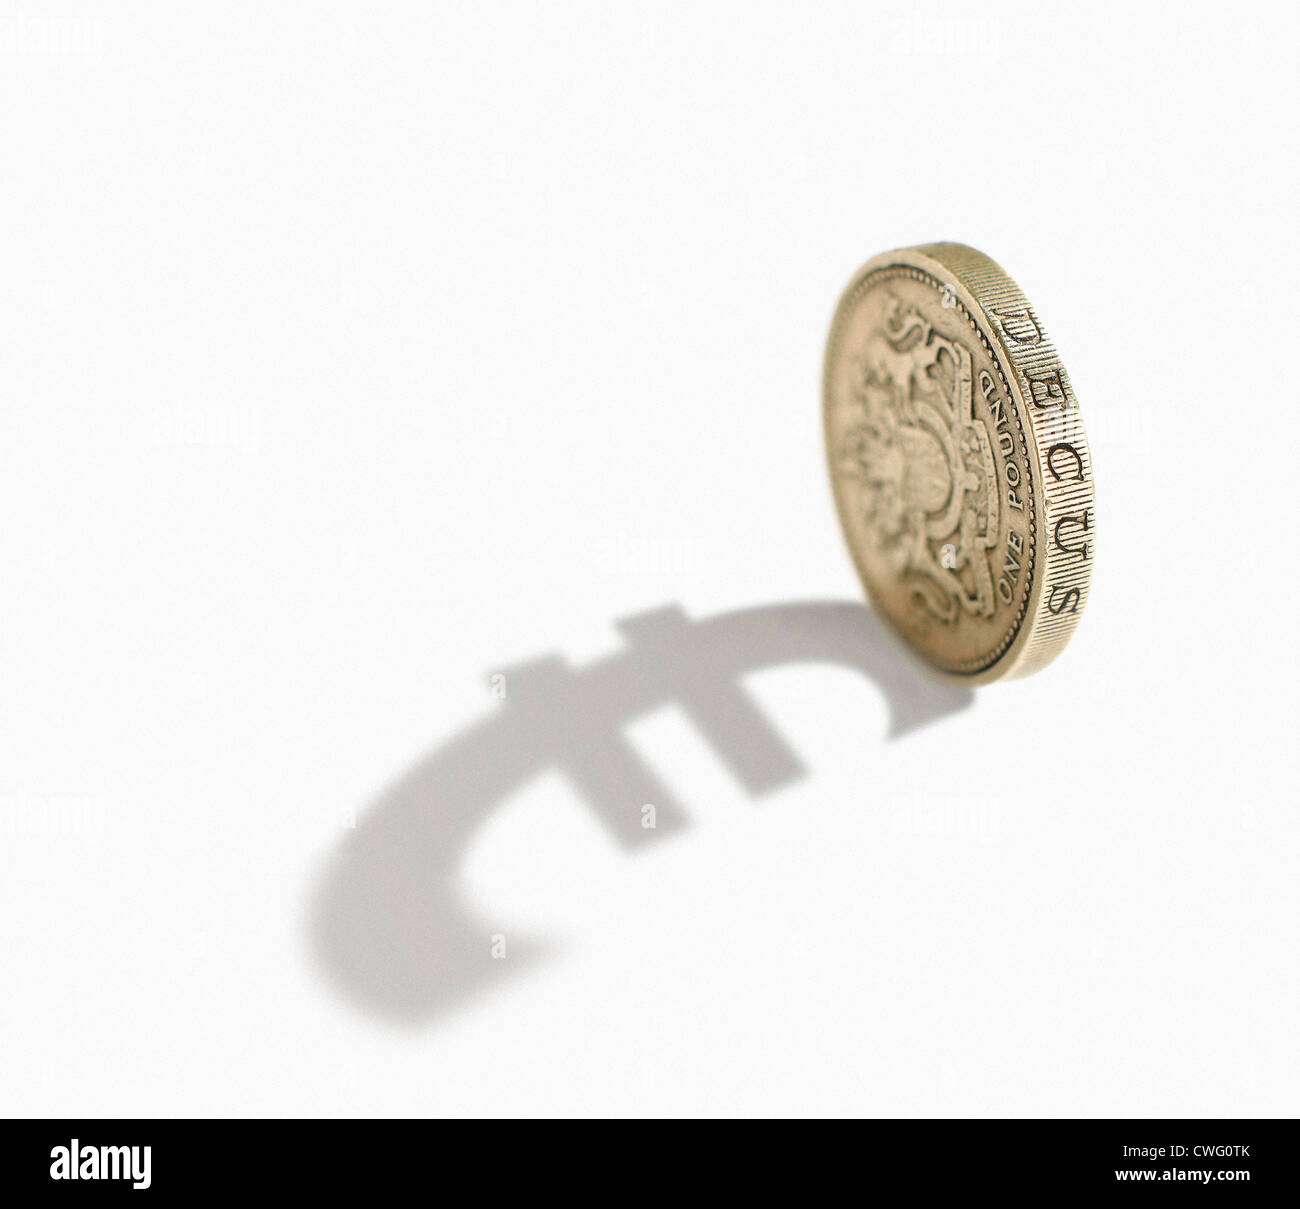 Pund coin jette une ombre du symbole de l'euro. Banque D'Images